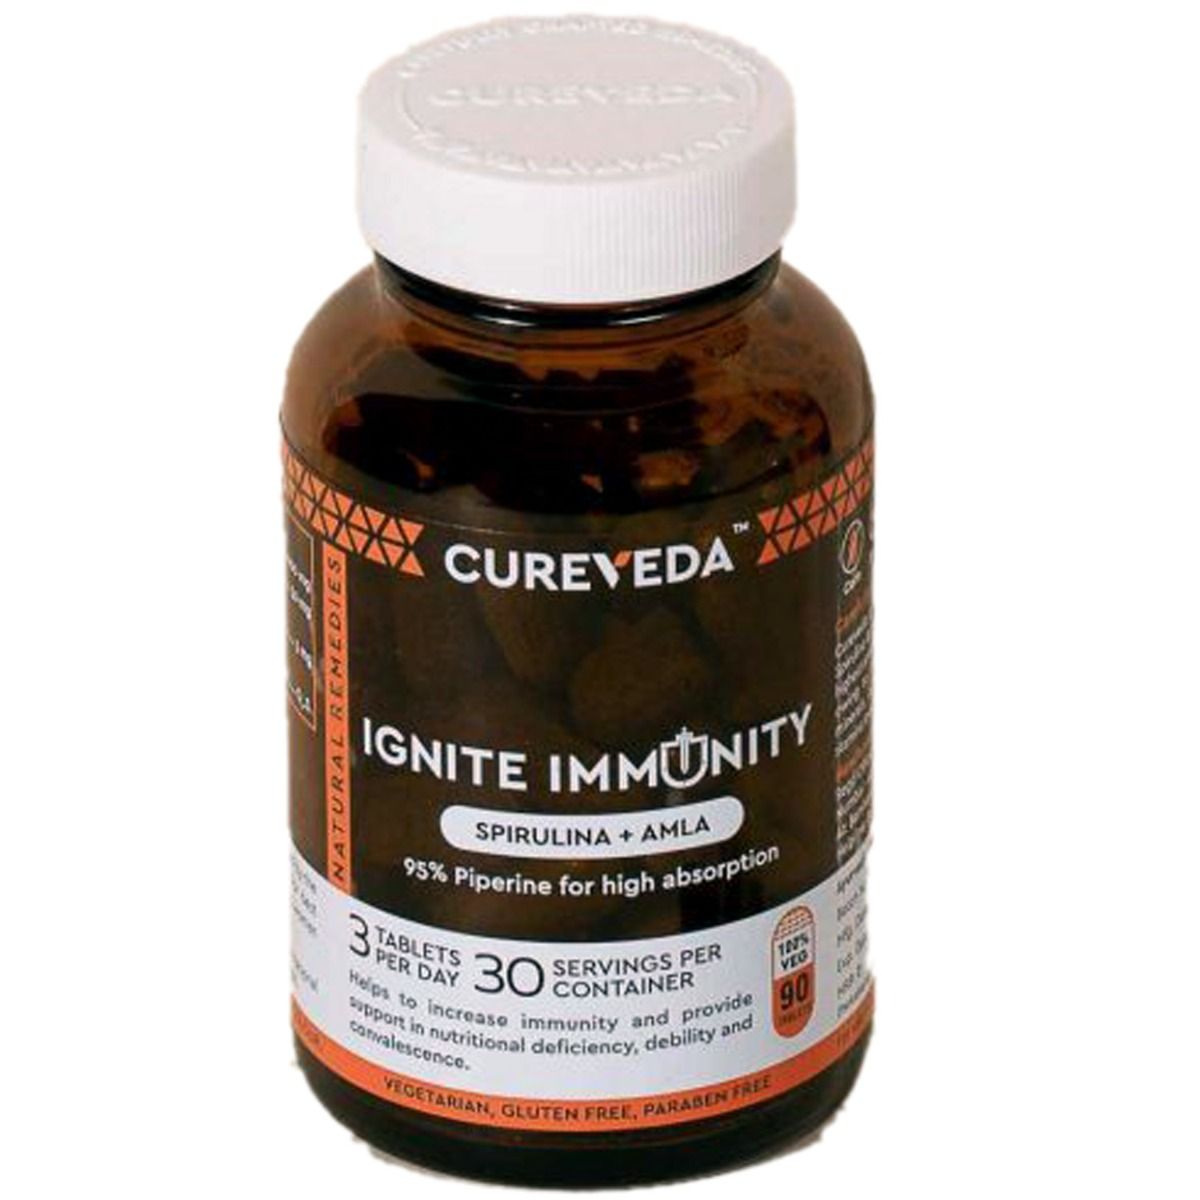 Buy Cureveda Ignite Immunity, 90 Tablets Online